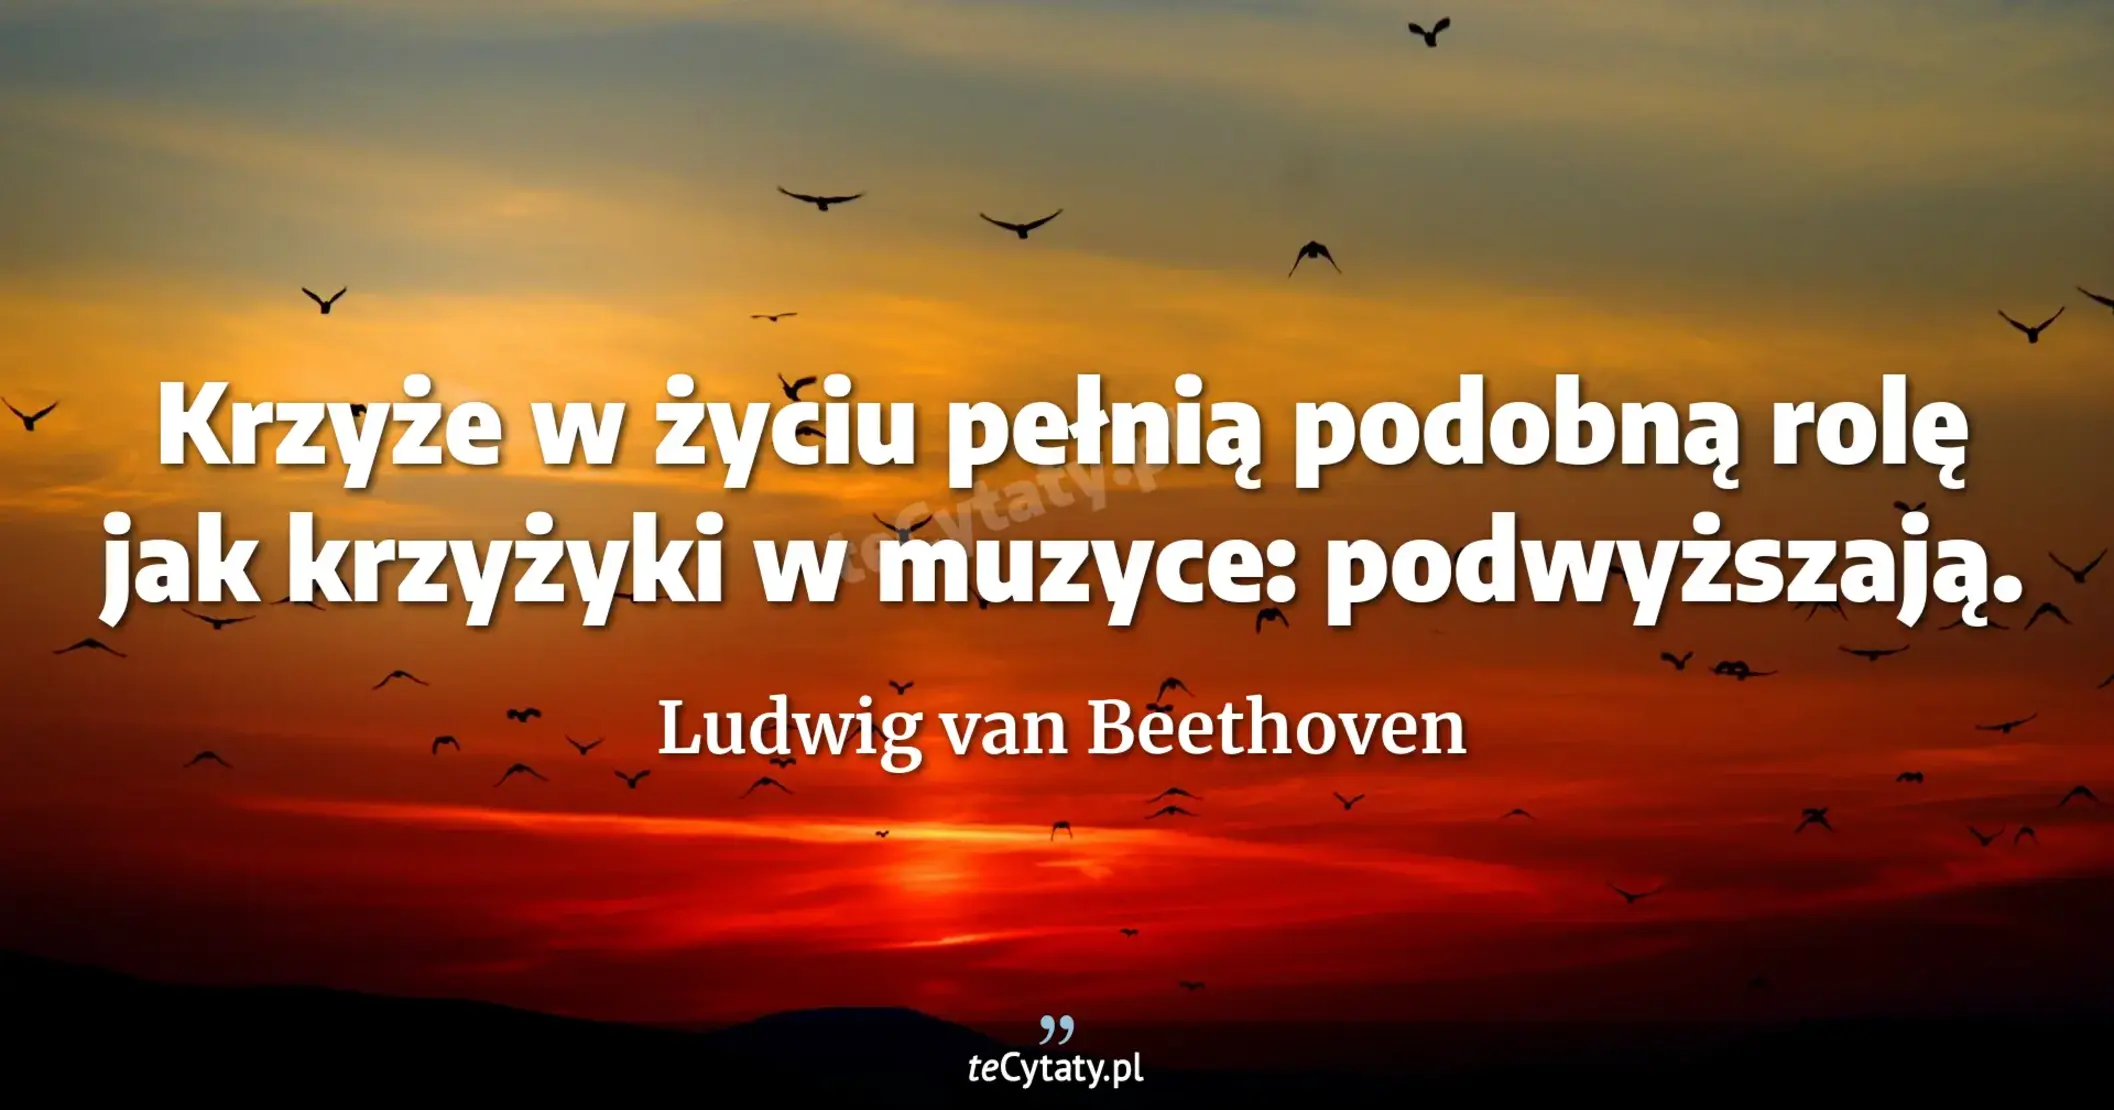 Krzyże w życiu pełnią podobną rolę jak krzyżyki w muzyce: podwyższają. - Ludwig van Beethoven